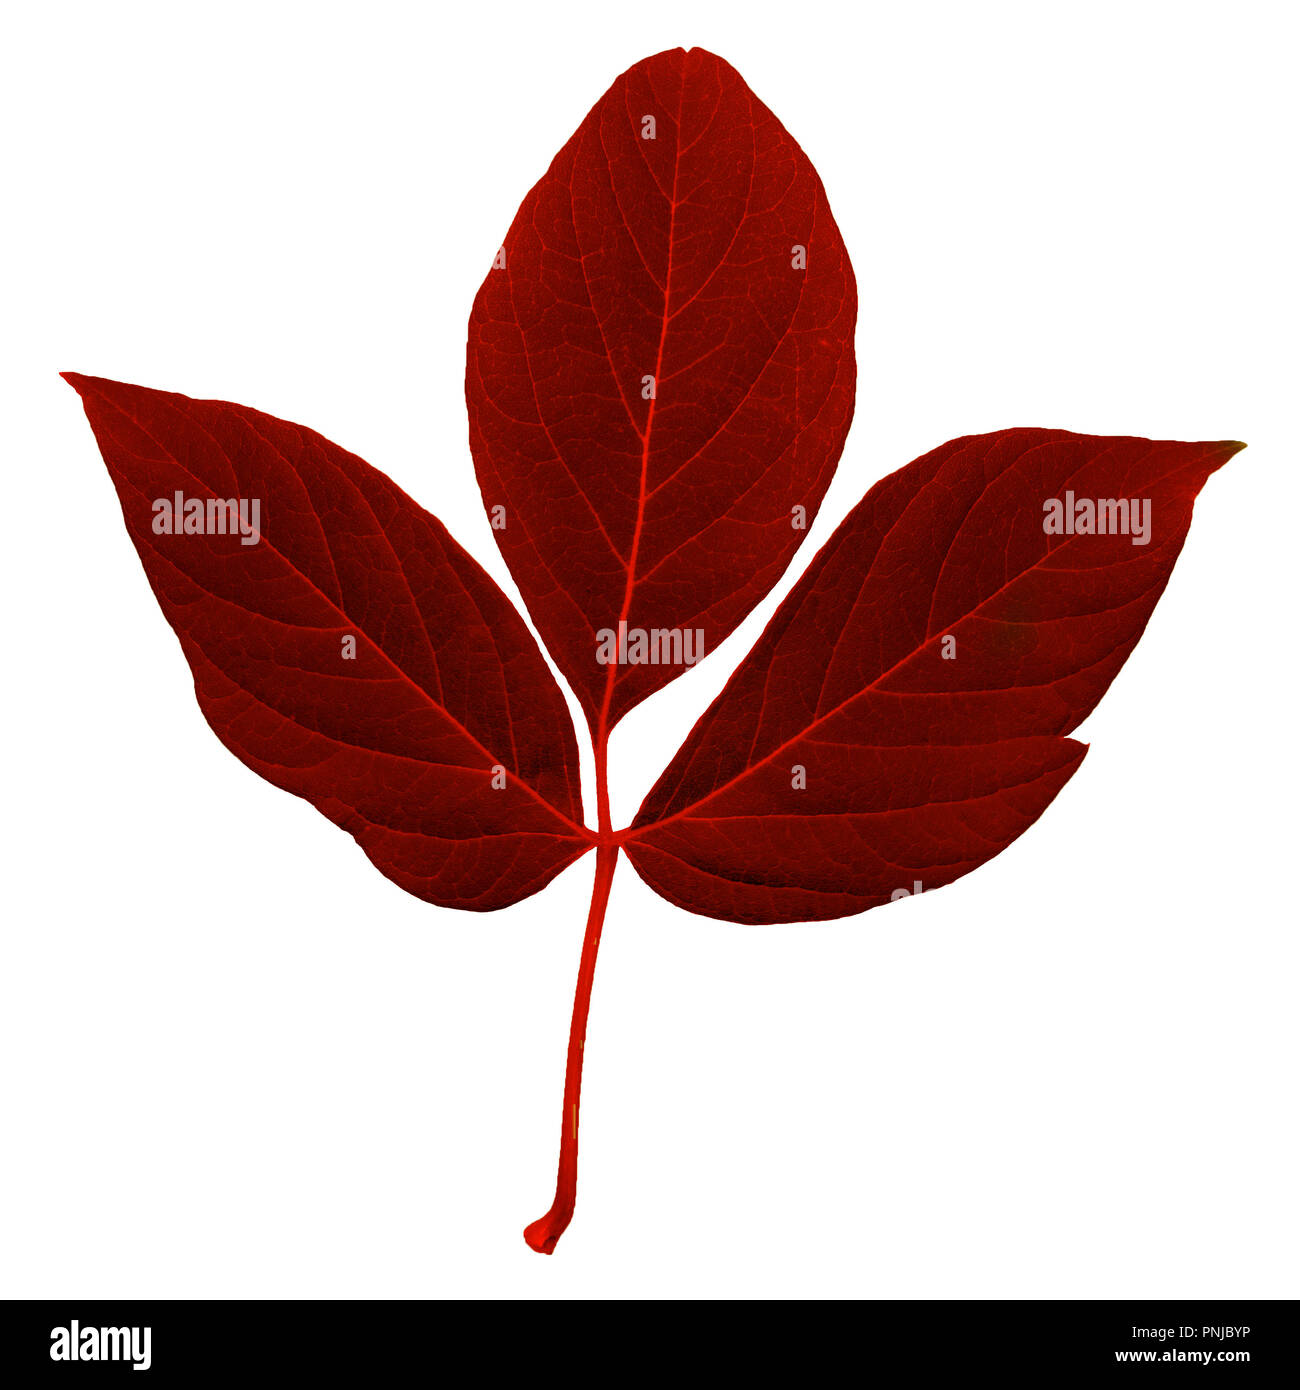 Couleur rouge naturel feuille fraîche avec tige, feuilles pennées avec beaucoup de rayures isolé sur fond blanc Banque D'Images